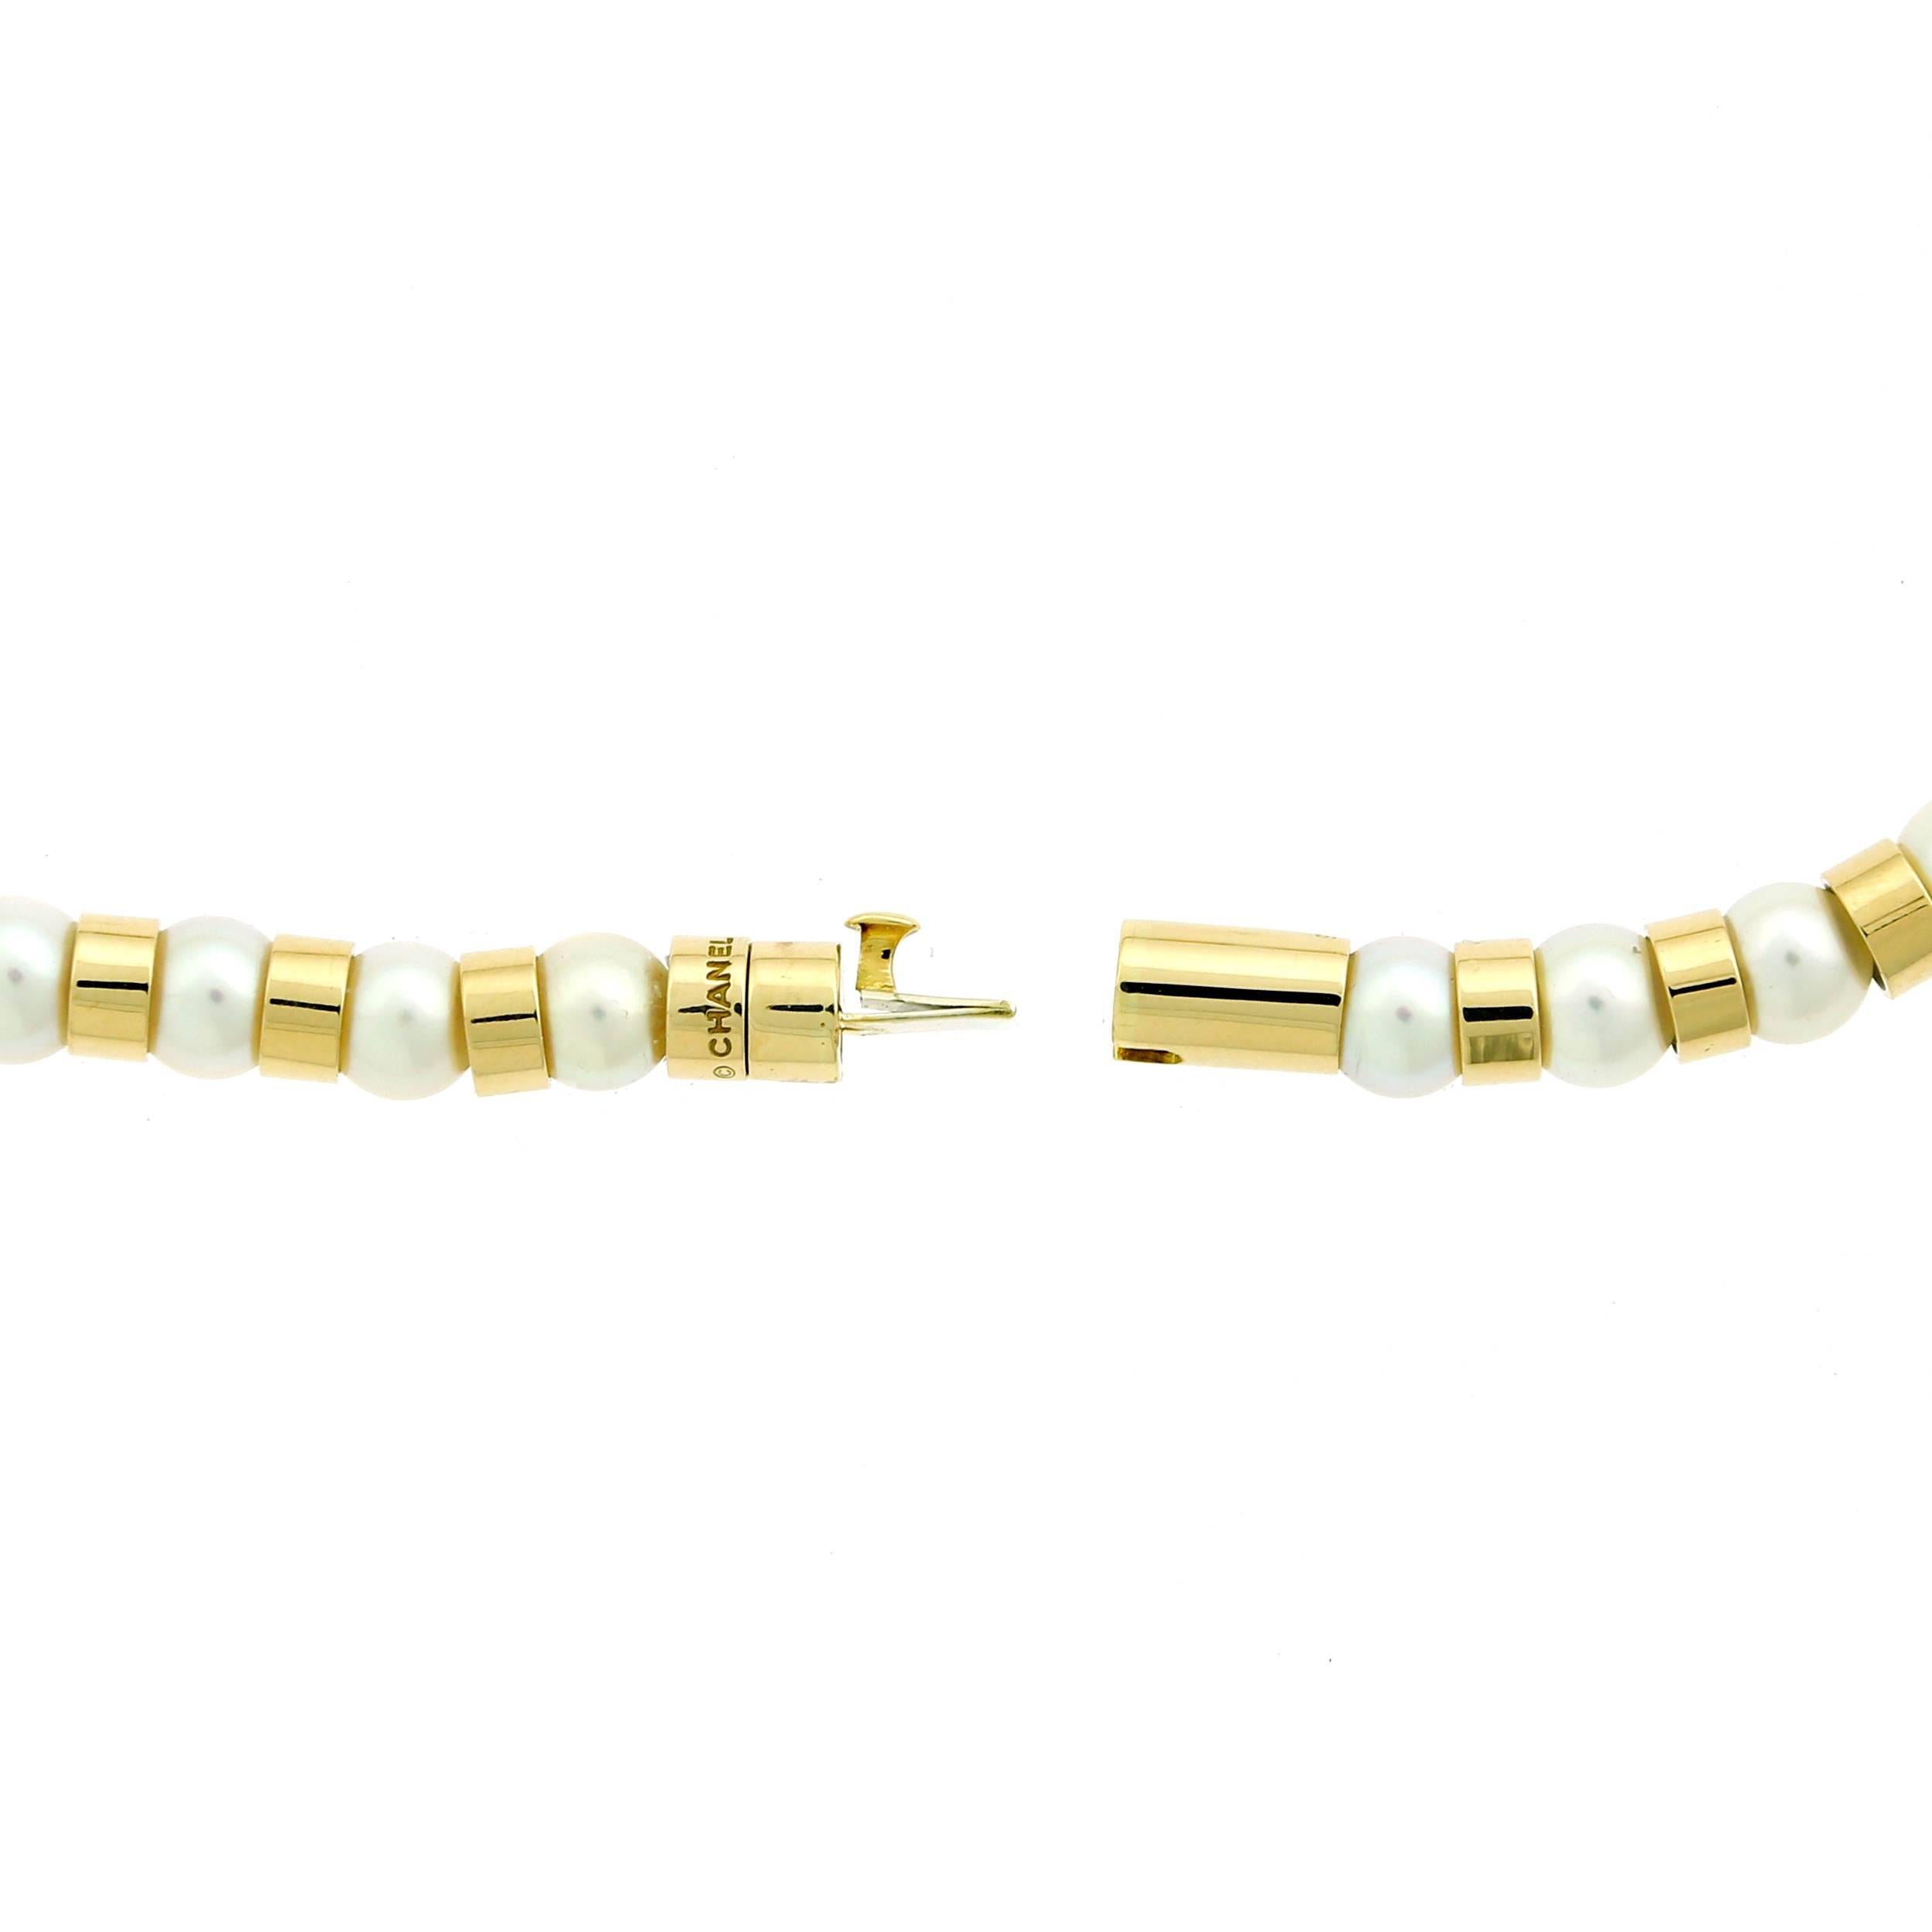 Eine fabelhafte Chanel-Halskette mit Perlen aus 18-karätigem Gelbgold im Kontrast zu den Perlen. Die Halskette hat eine Länge von 15